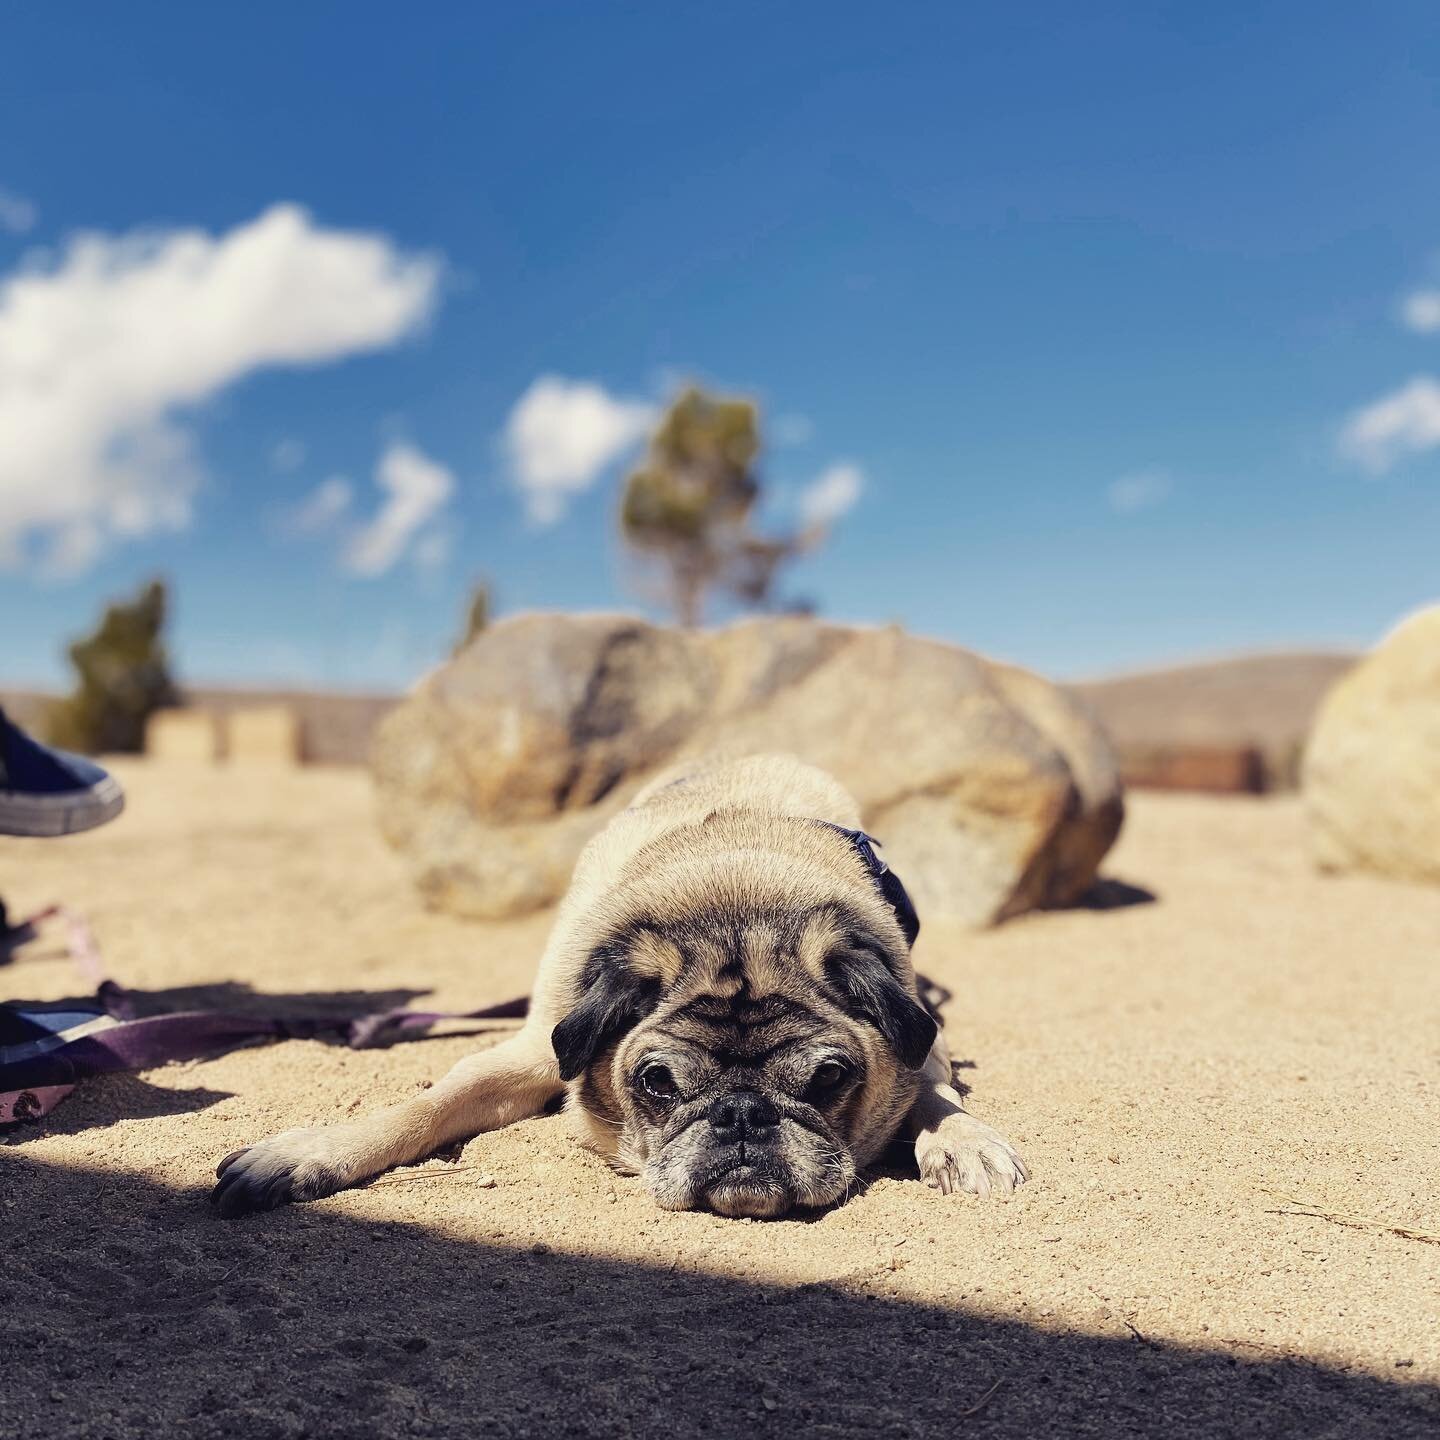 Desert dog. 

#pug #pugsofinstagram #yuccavalley #pioneertown